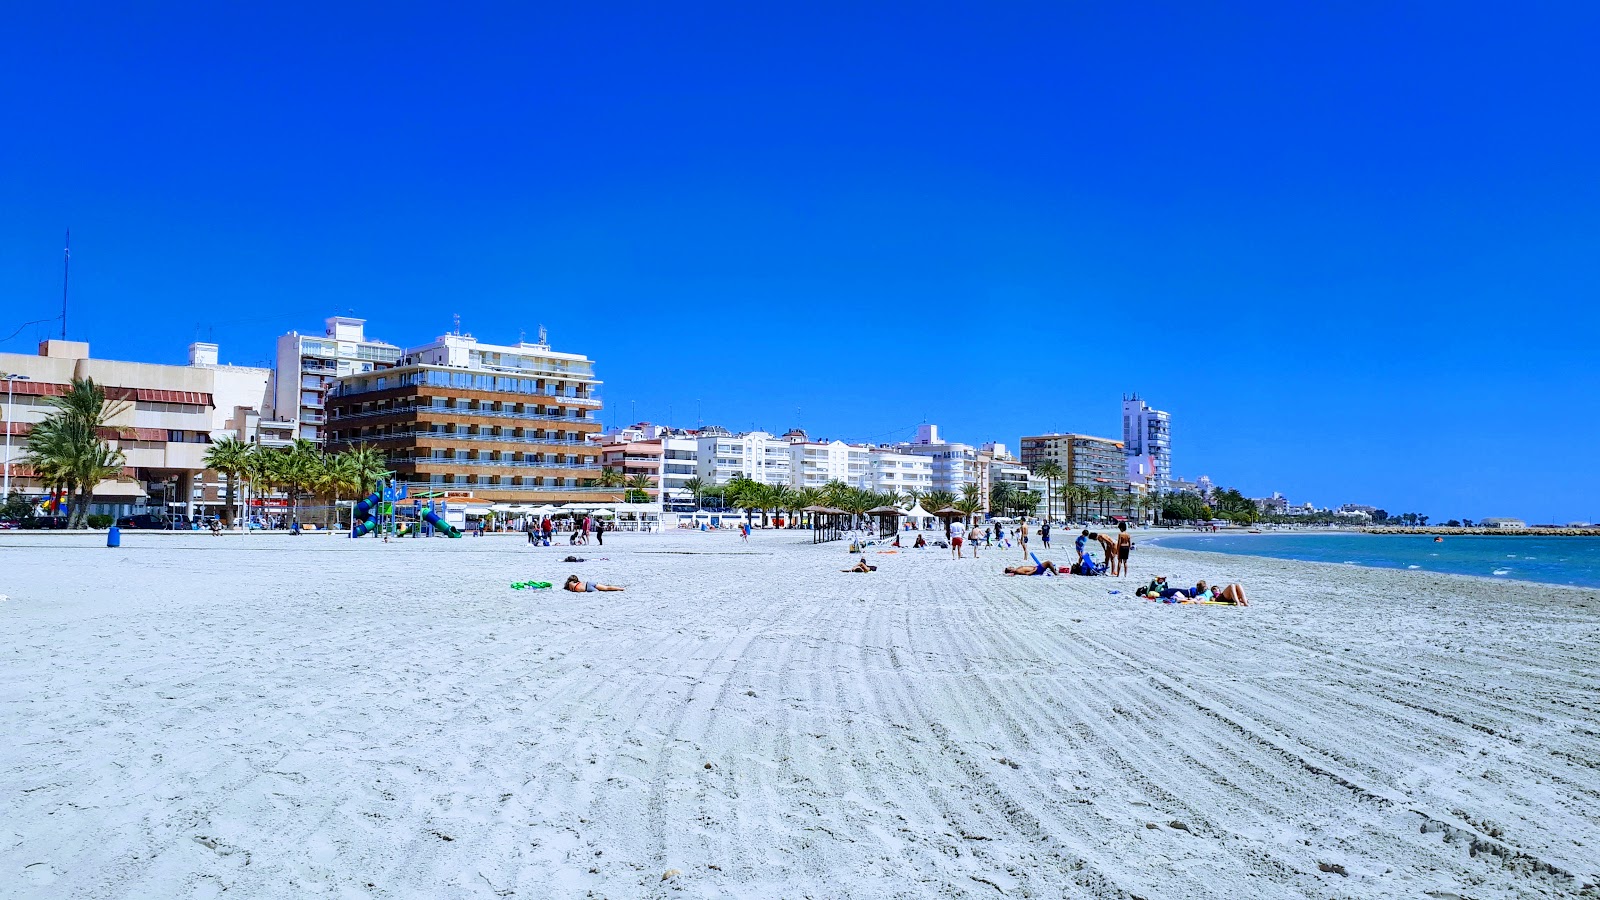 Foto de Beach Santa Pola 2 - lugar popular entre los conocedores del relax